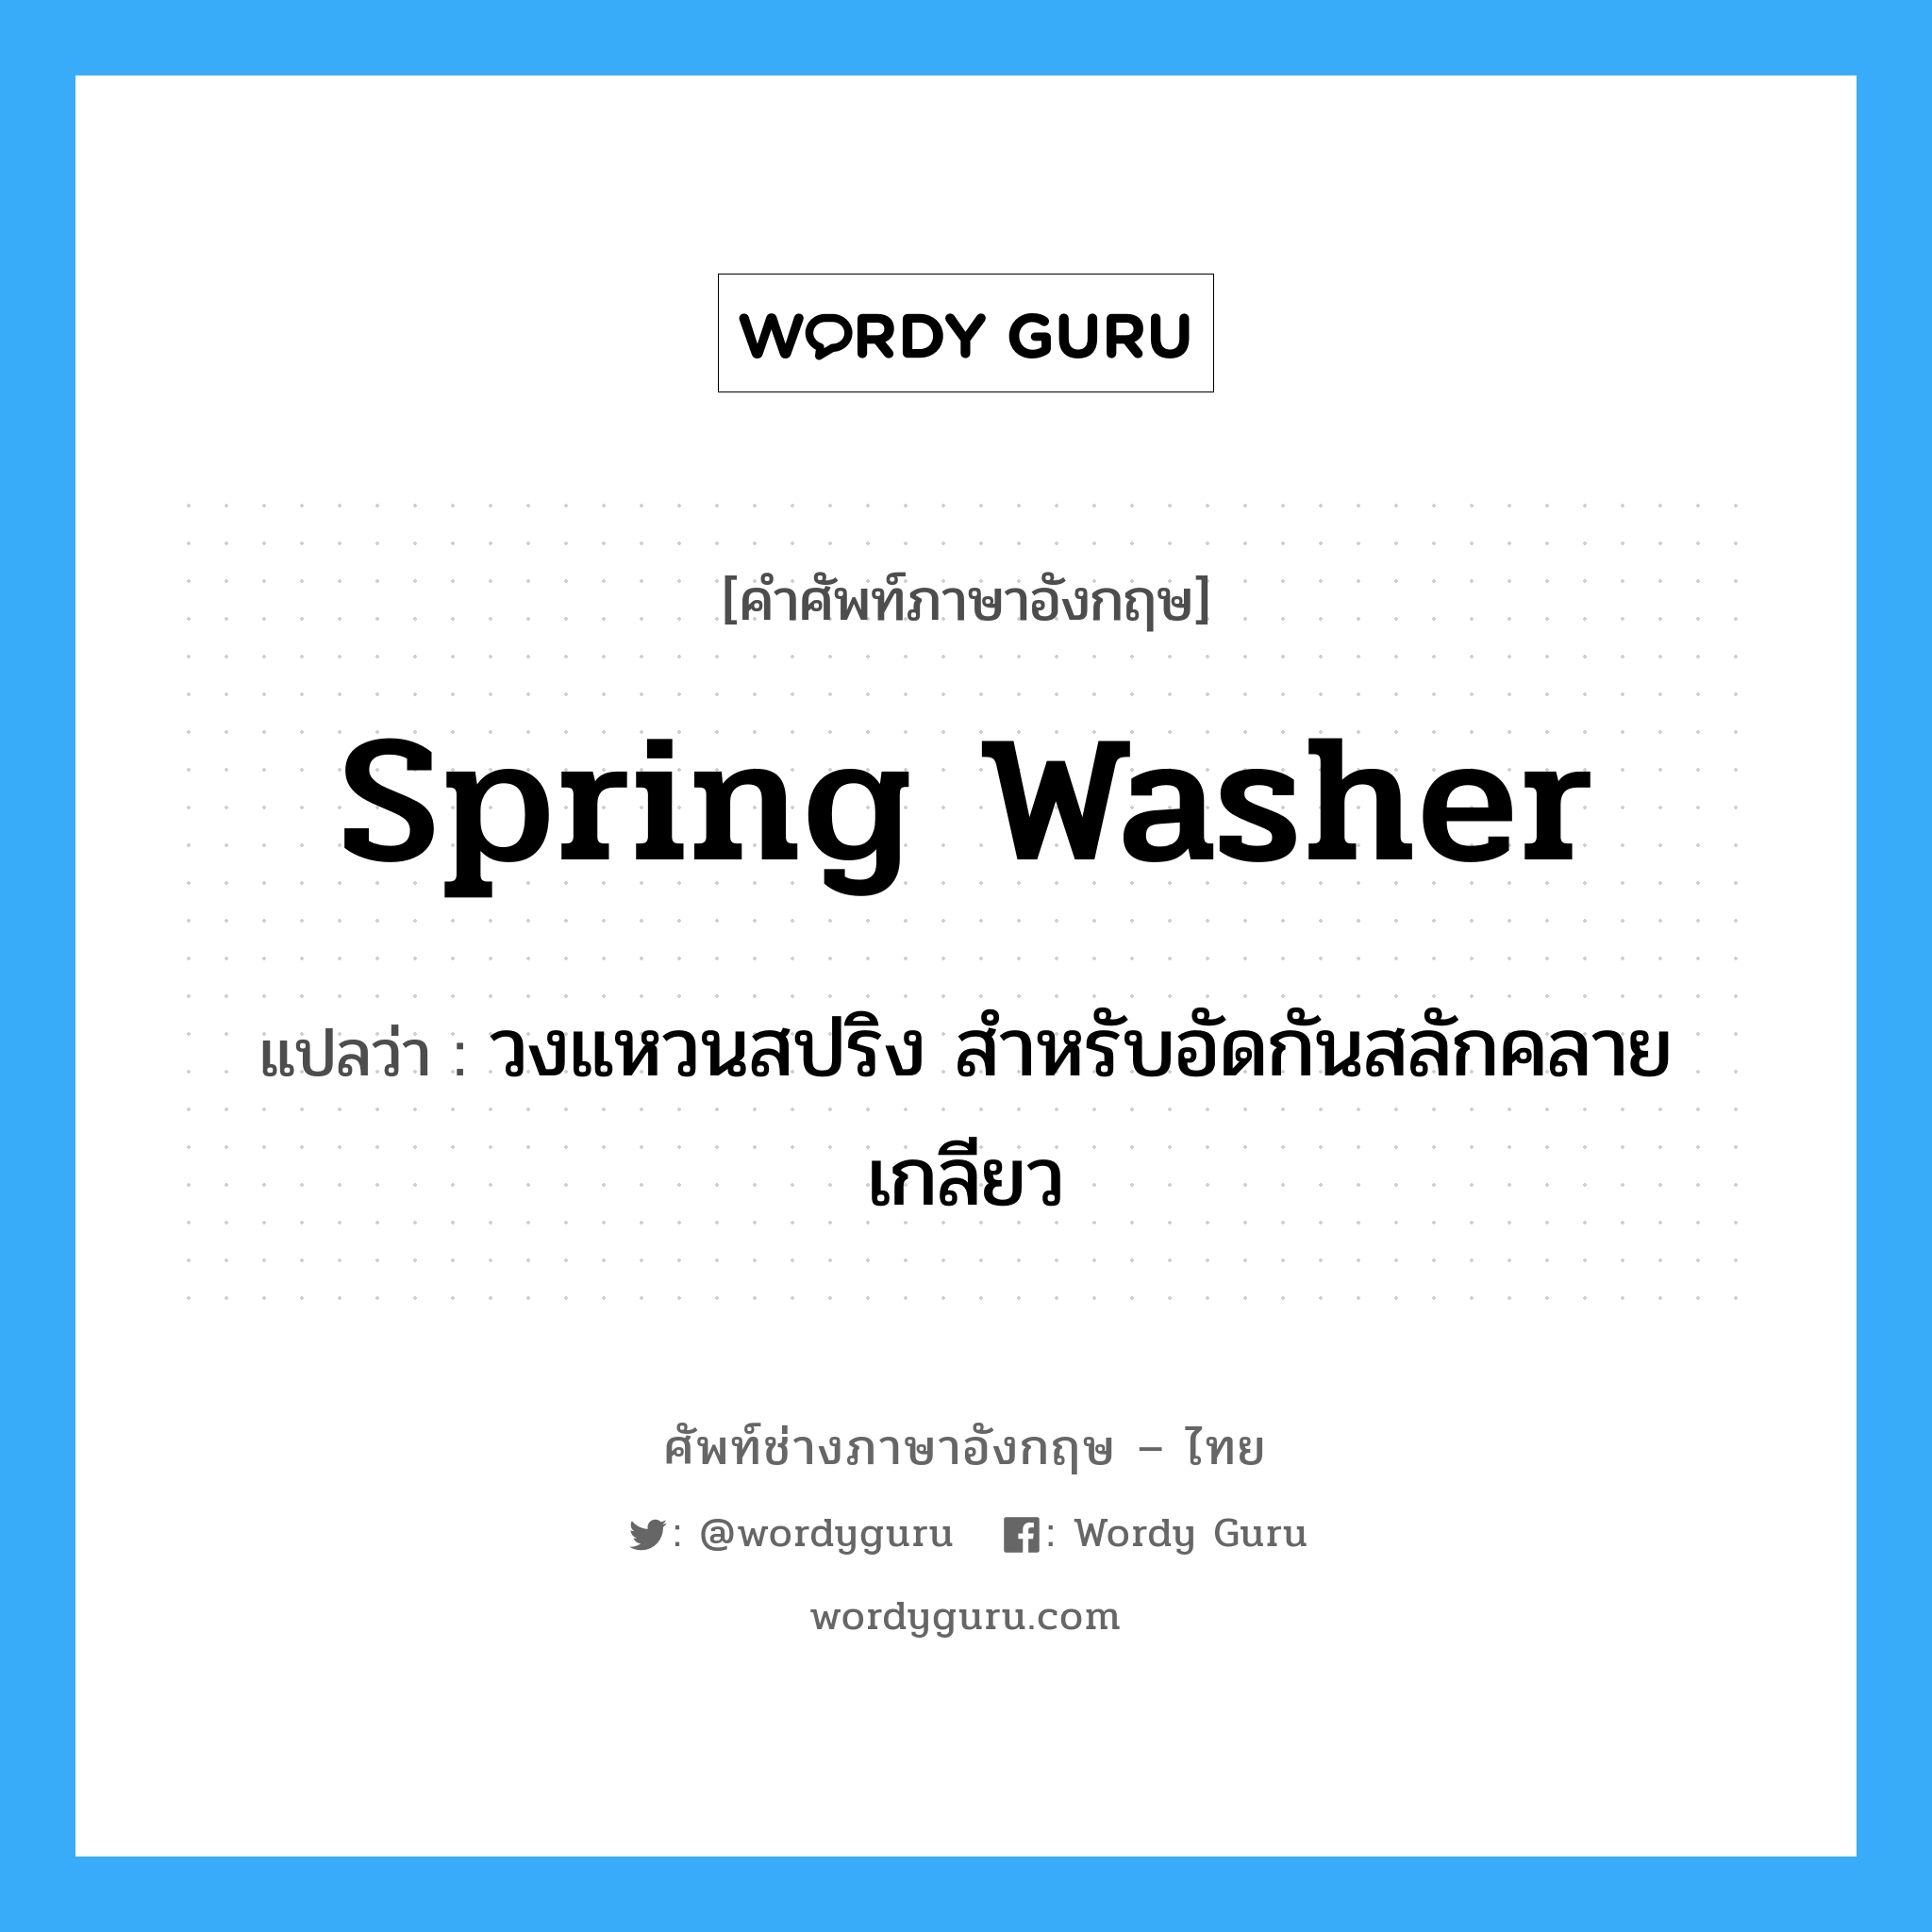 spring washer แปลว่า?, คำศัพท์ช่างภาษาอังกฤษ - ไทย spring washer คำศัพท์ภาษาอังกฤษ spring washer แปลว่า วงแหวนสปริง สำหรับอัดกันสลักคลายเกลียว